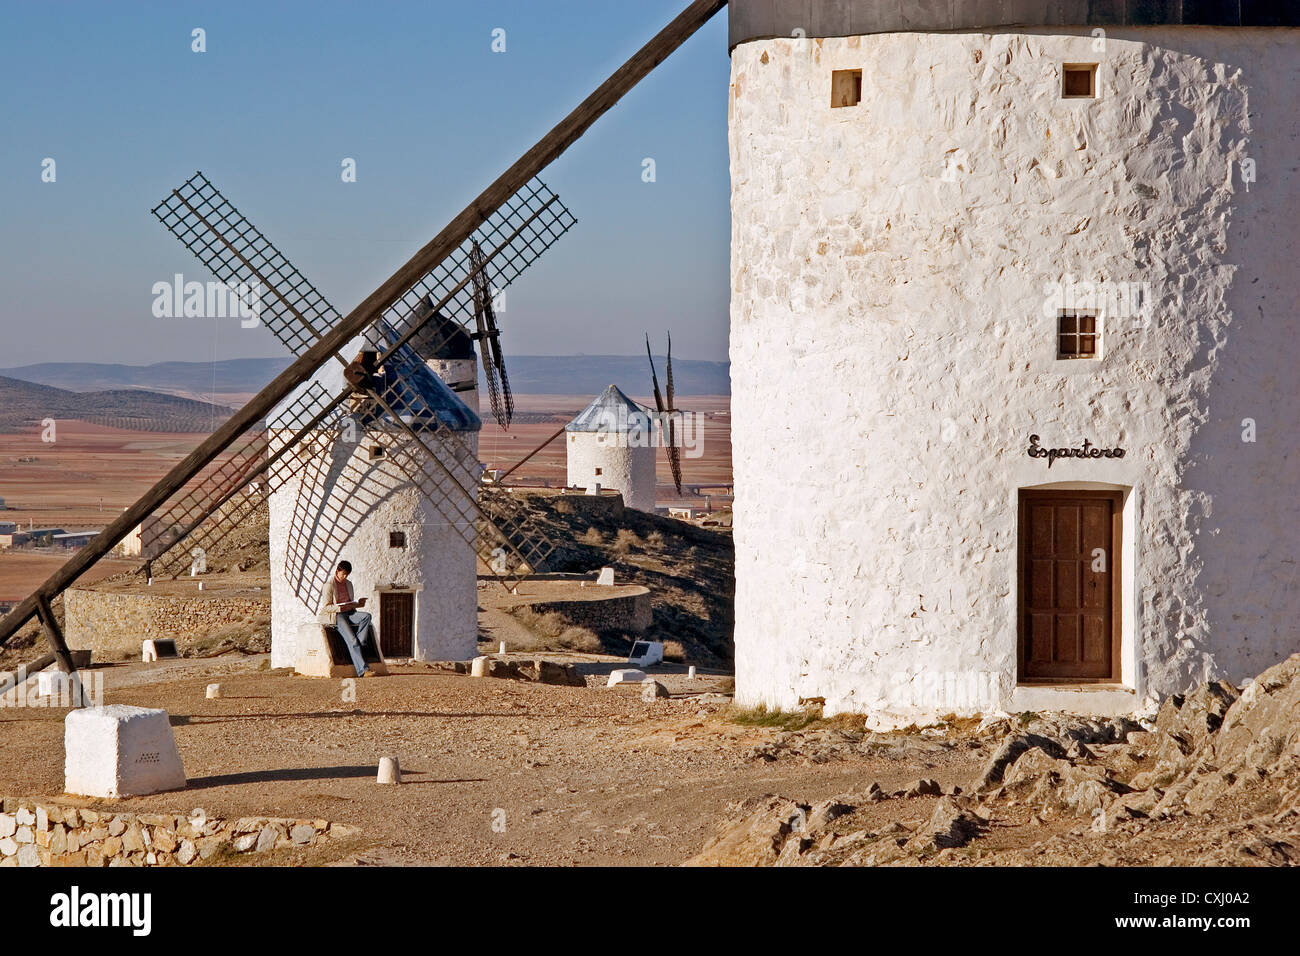 windmills Consuegra Toledo Castilla La Mancha Spain molinos de viento en consuegra toledo castilla la mancha españa Stock Photo